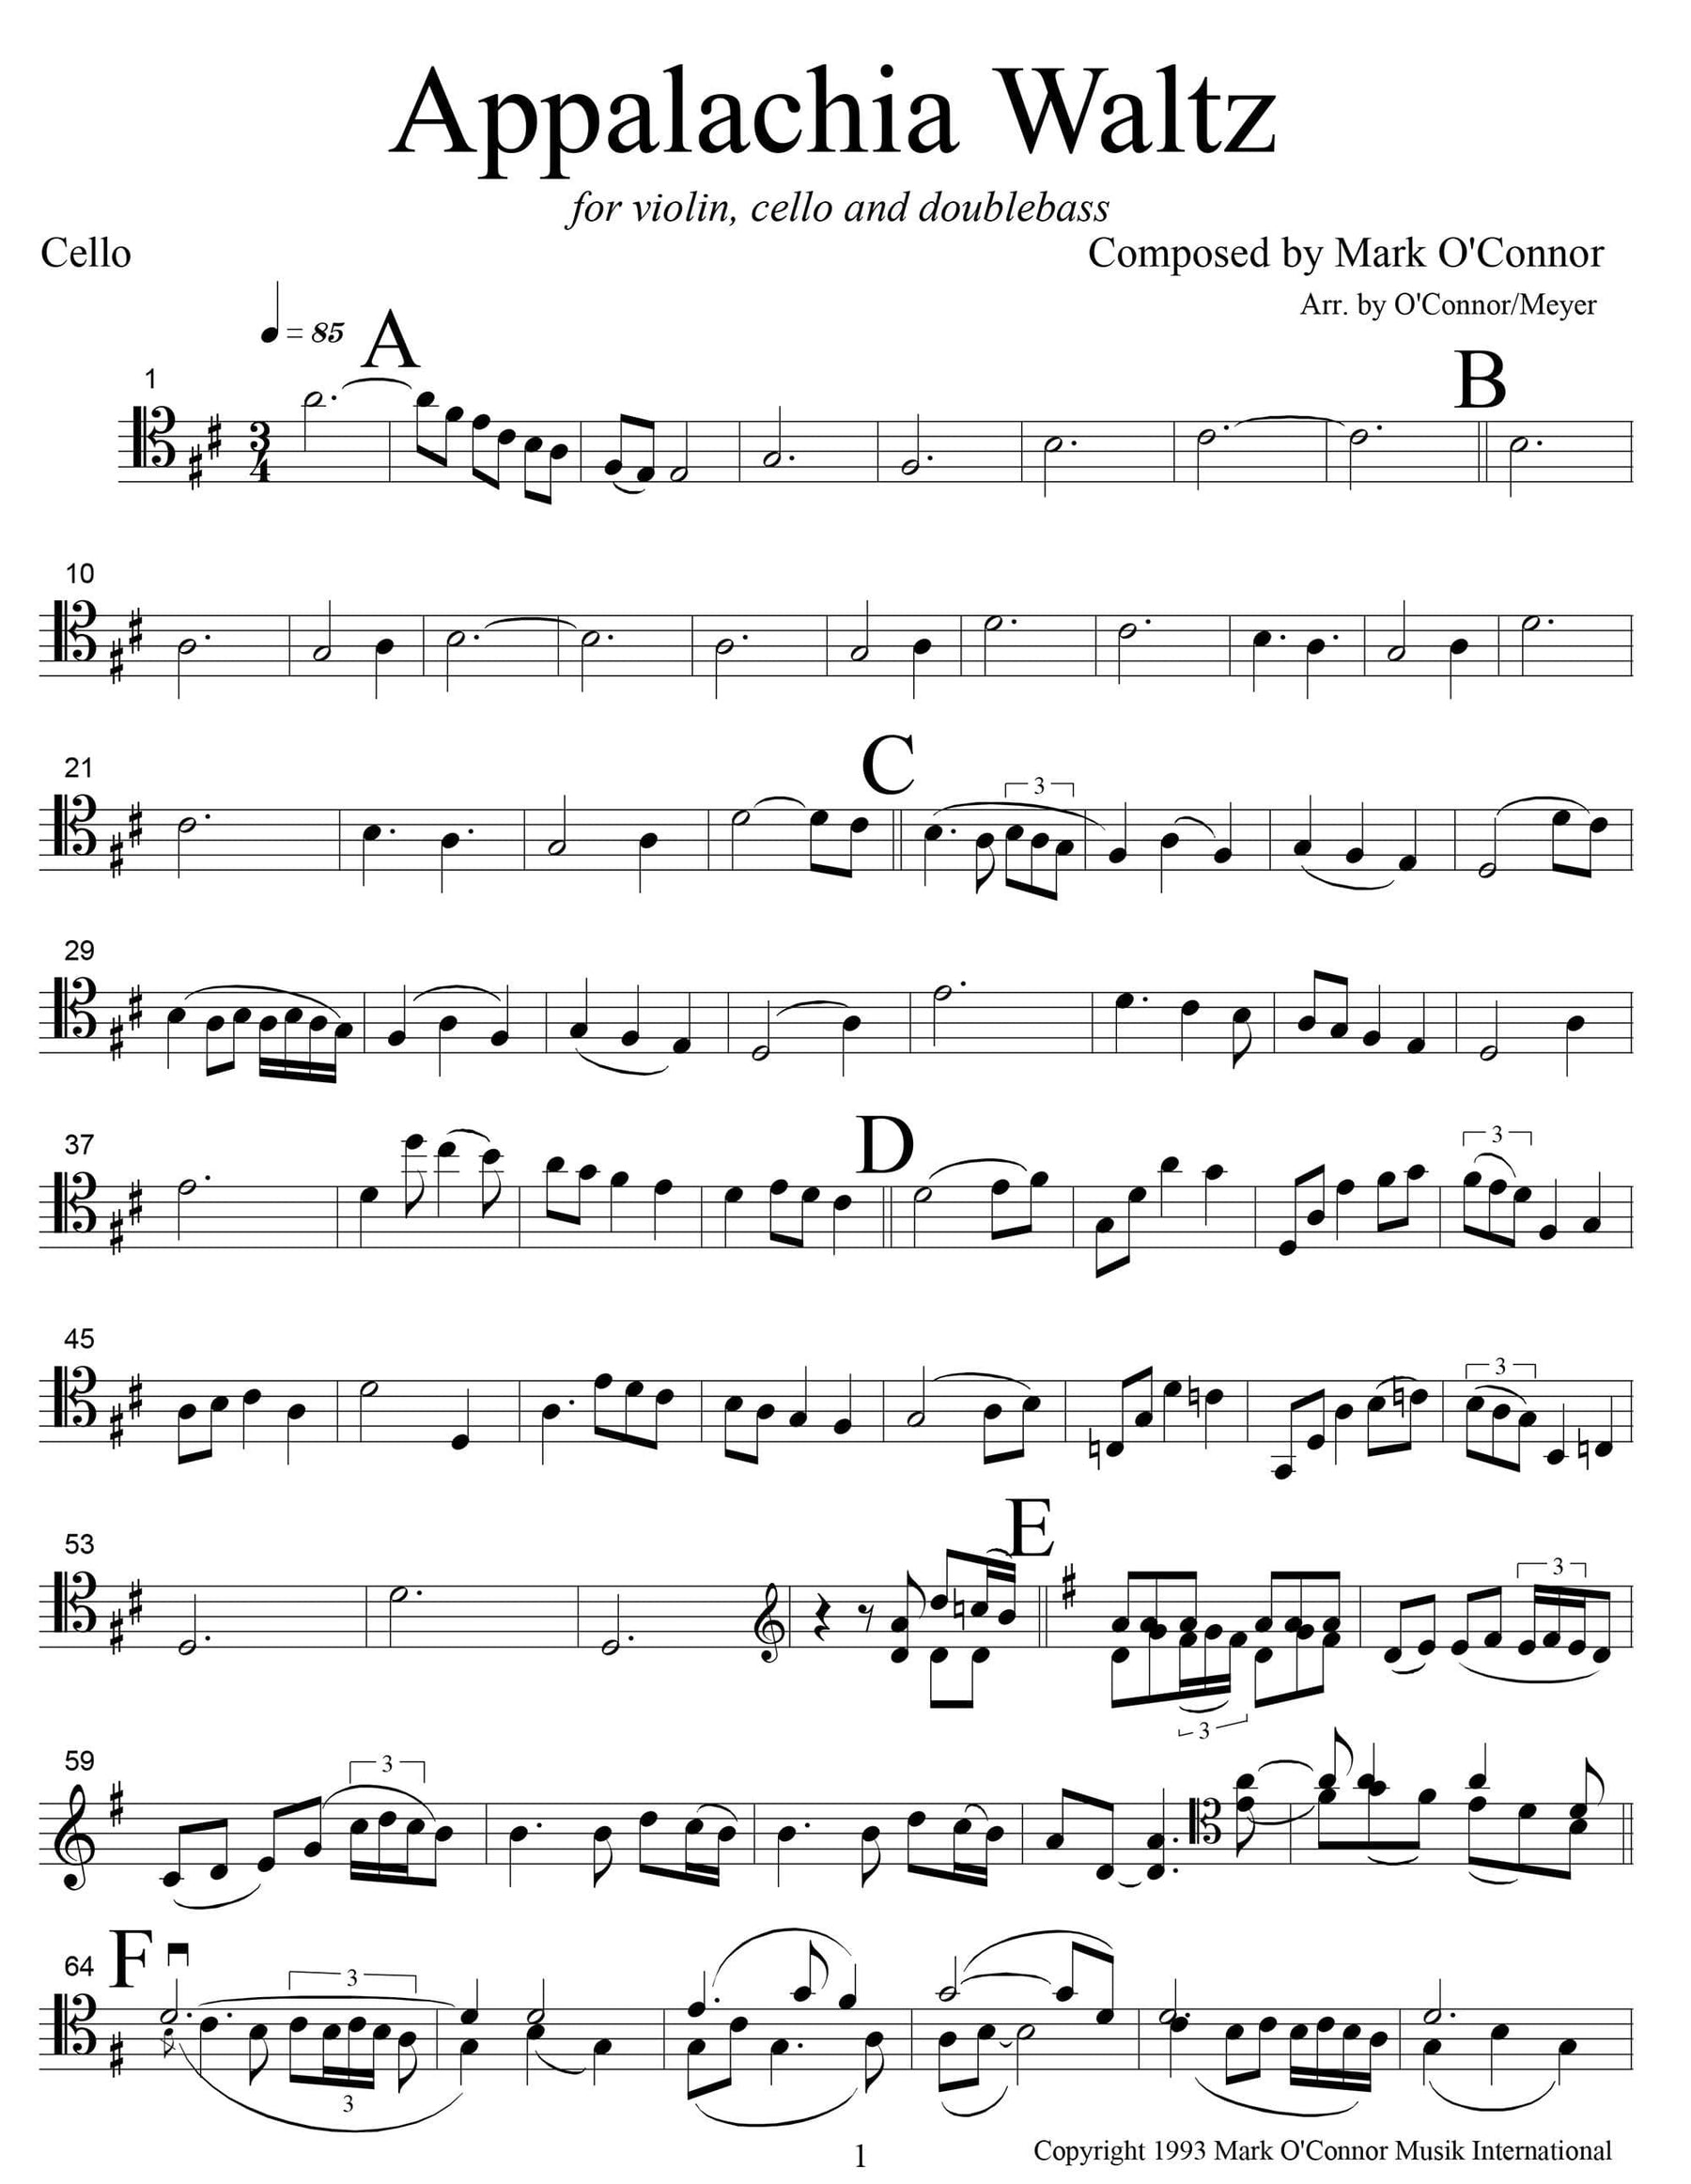 O'Connor, Mark - Appalachia Waltz for Violin, Cello, and Bass - Cello - Digital Download